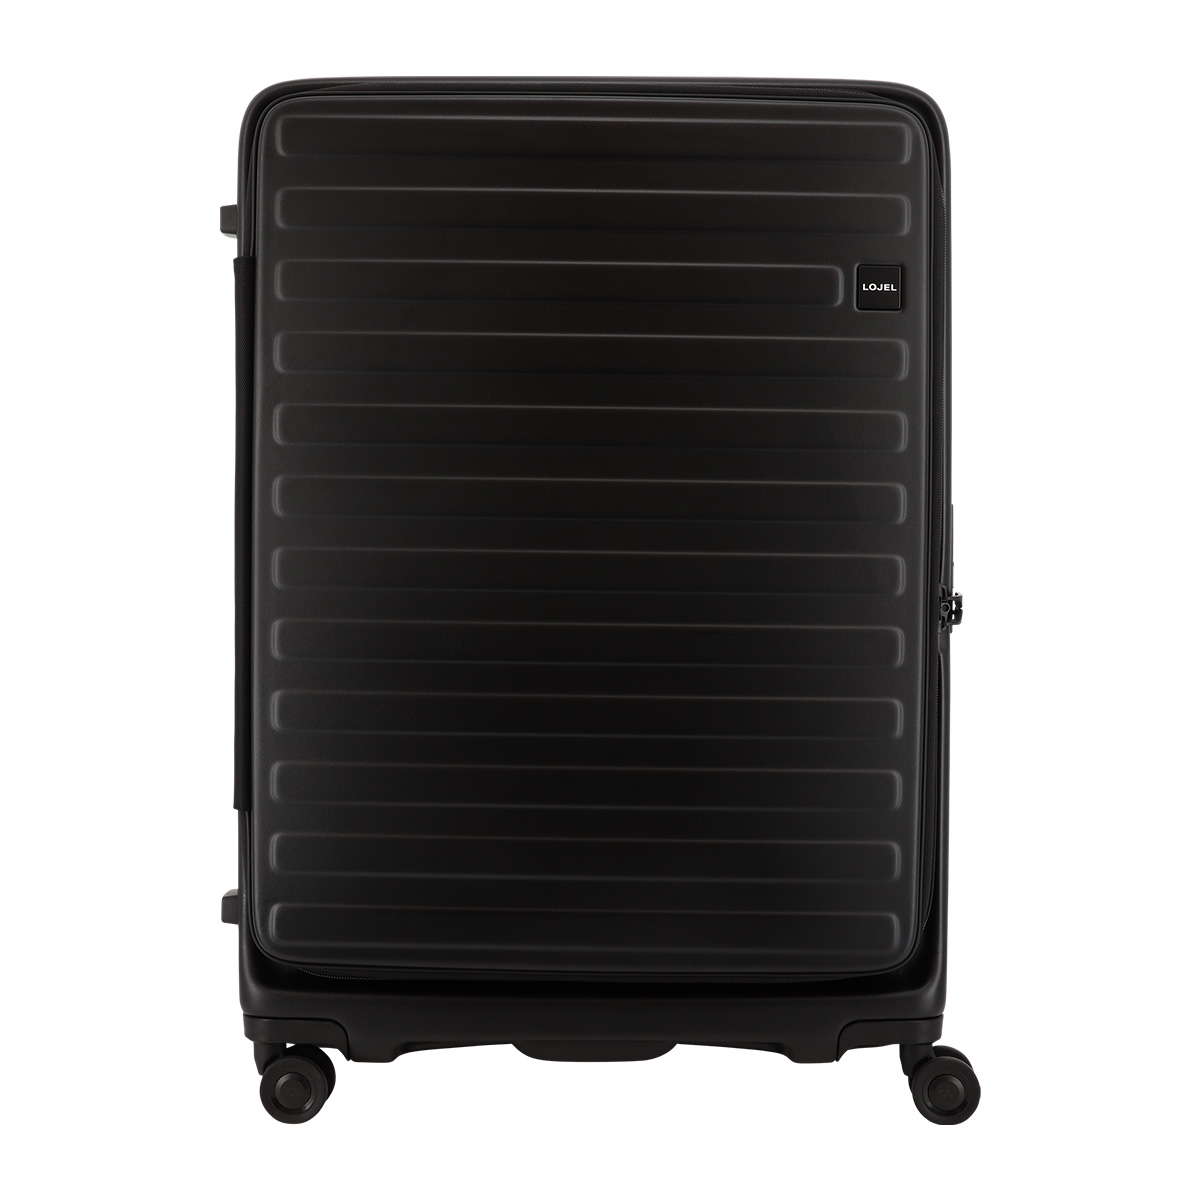 ロジェール スーツケース キューボ 120(130)L 72cm 5.3kg CUBO-REFRESH-LL LOJEL キャリーケース  キャリーバッグ 拡張機能 エキスパンダブル 海外旅行